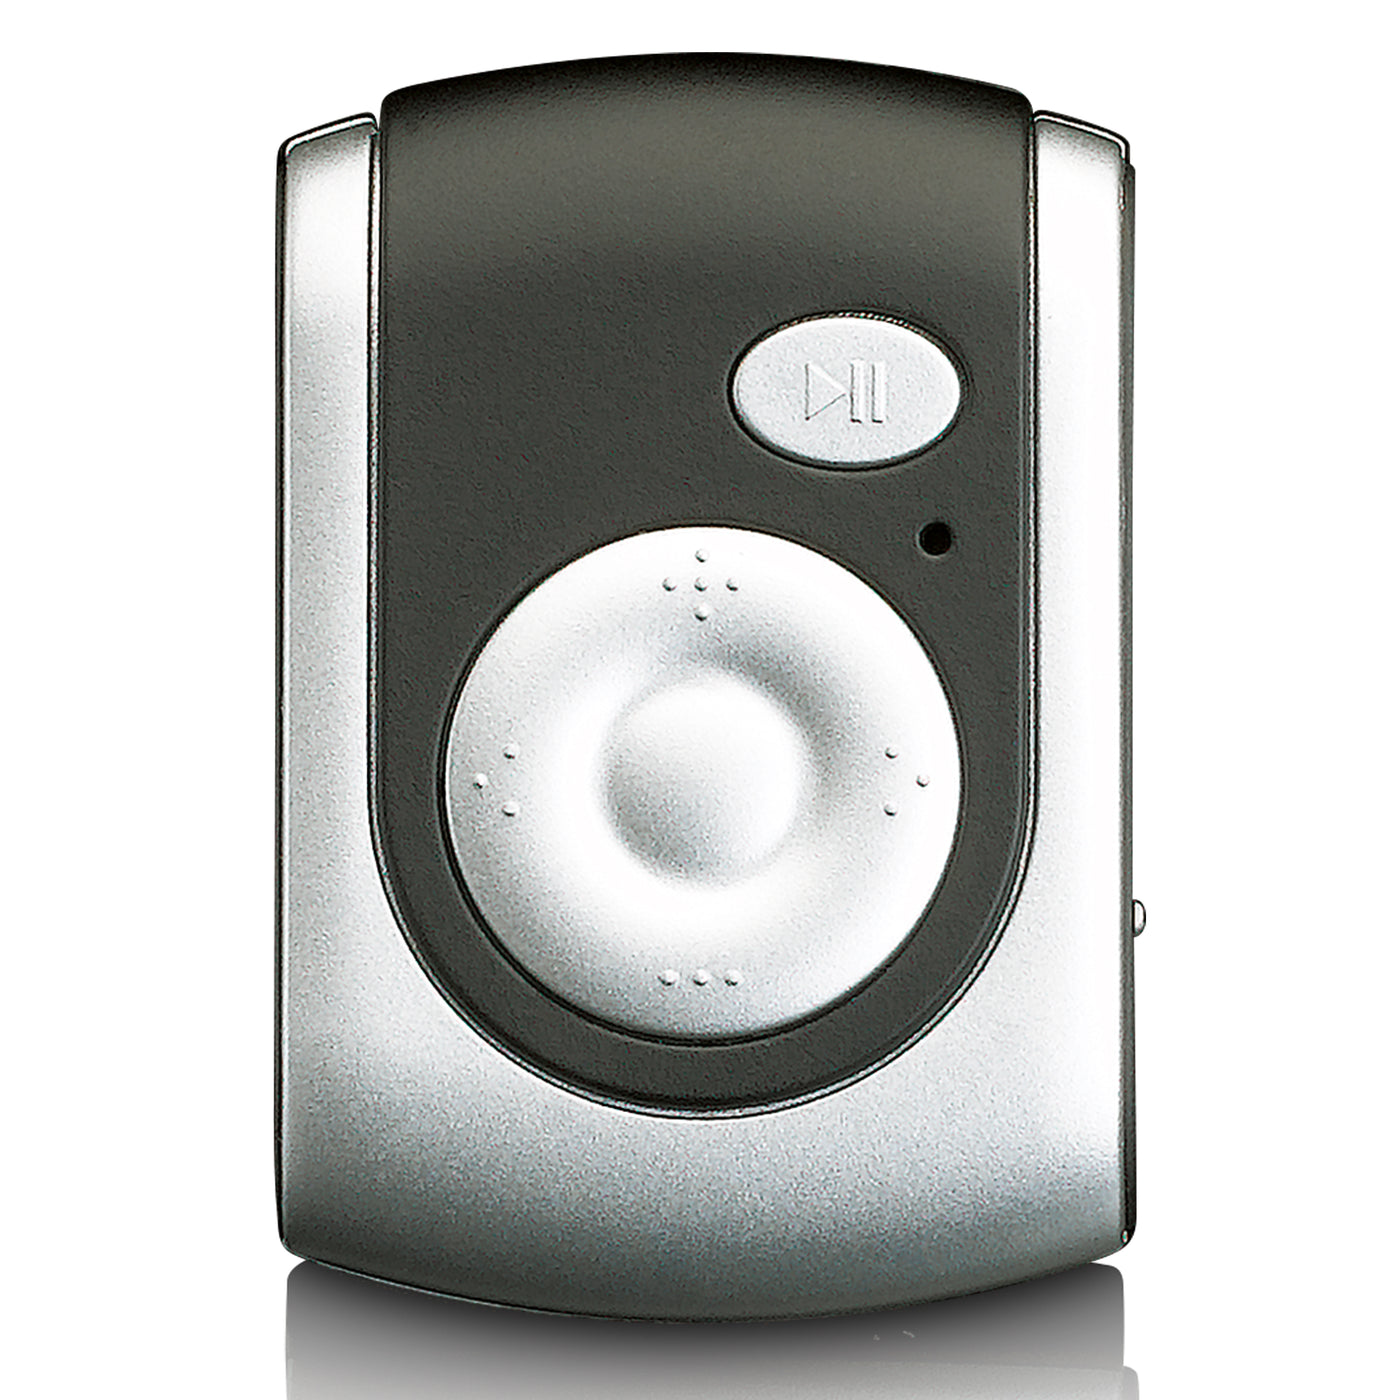 Ices IMP-101SI - Oplaadbare MP3 speler met SD-kaart slot en in-ear oortelefoon - Zilver